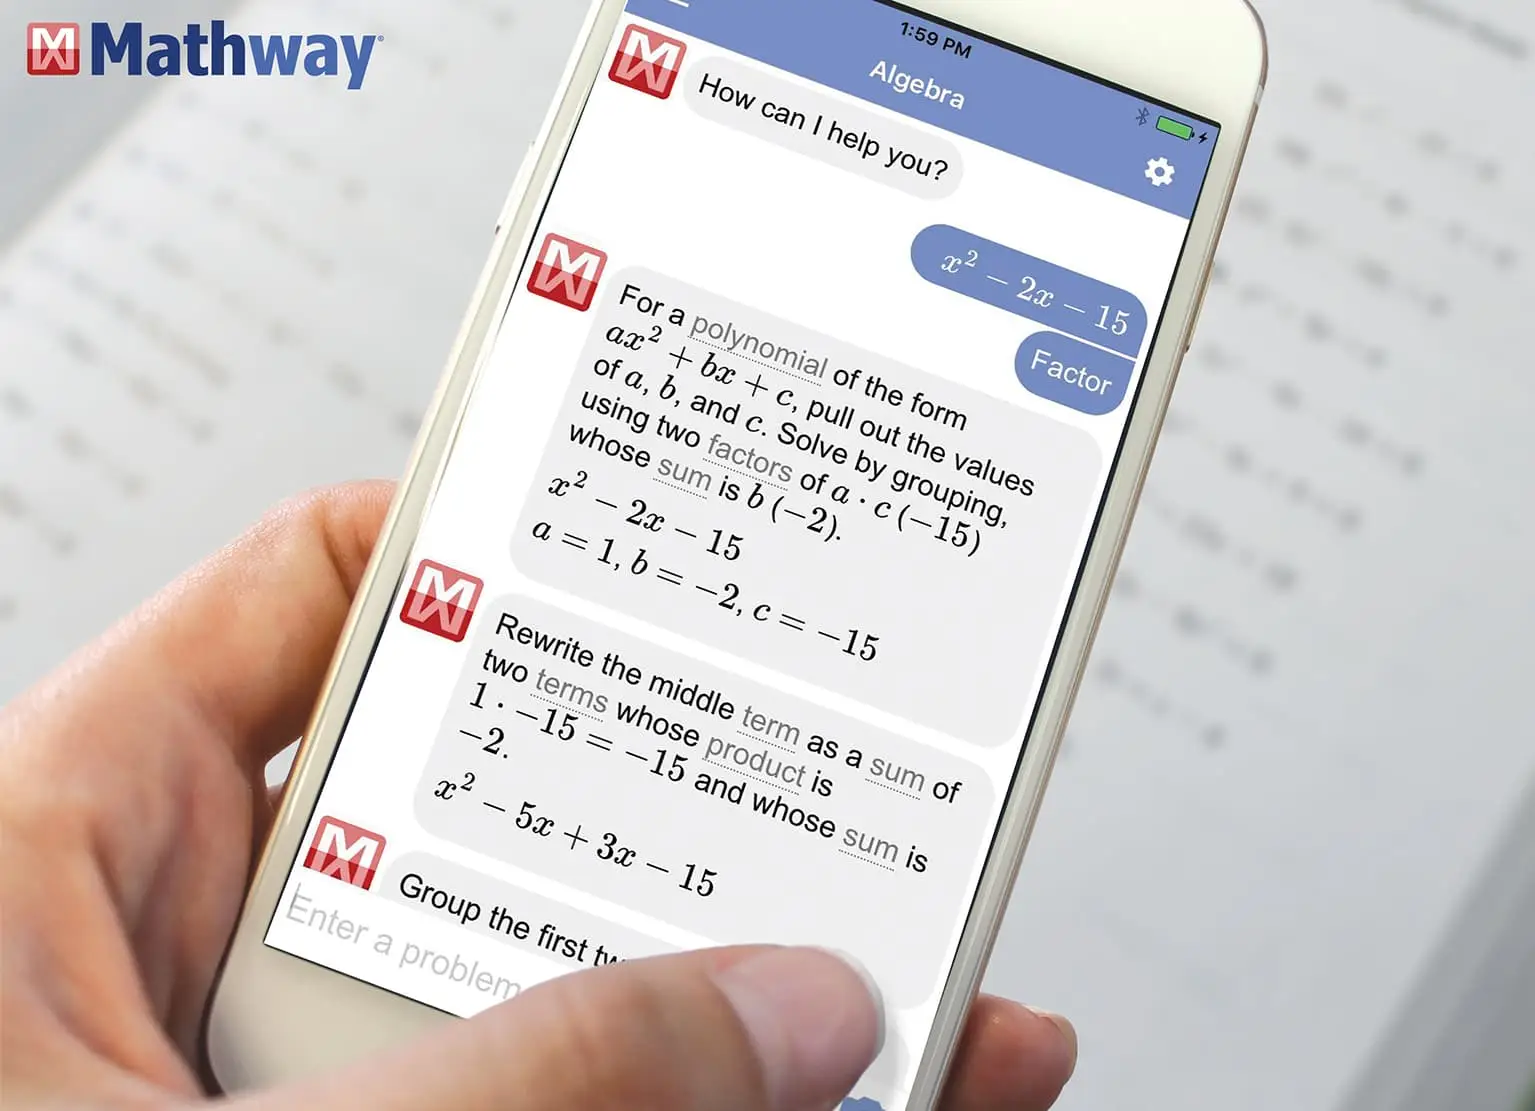 Giới thiệu về ứng dụng Mathway